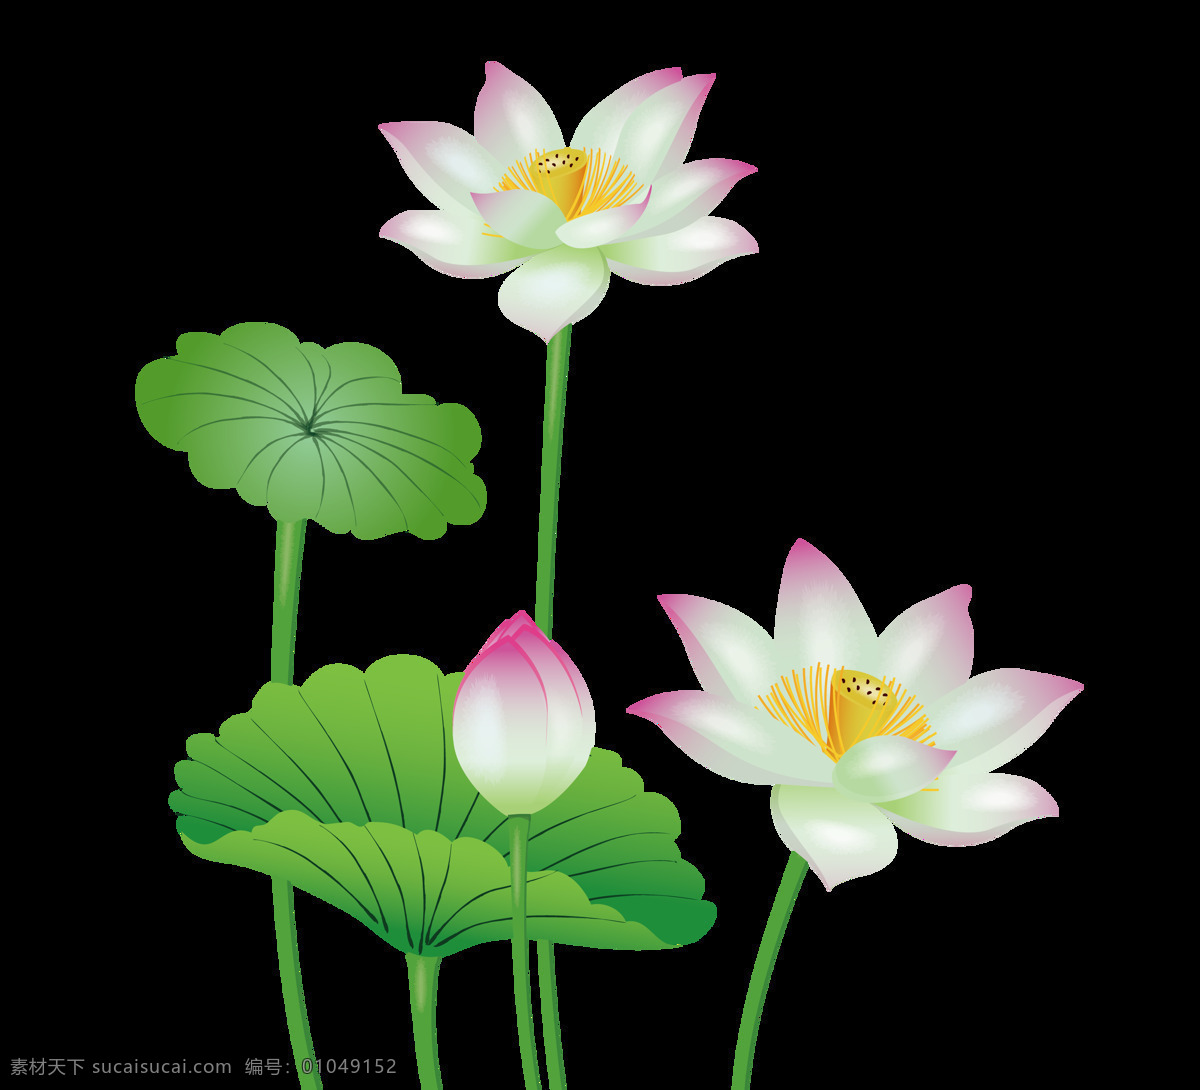 手绘 盛开 荷花 矢量 免 抠 图 卡通的 插画 荷叶 绿色 白色 粉色 夏季 夏日 盛开的花朵 花卉 花骨朵 莲花 粉莲